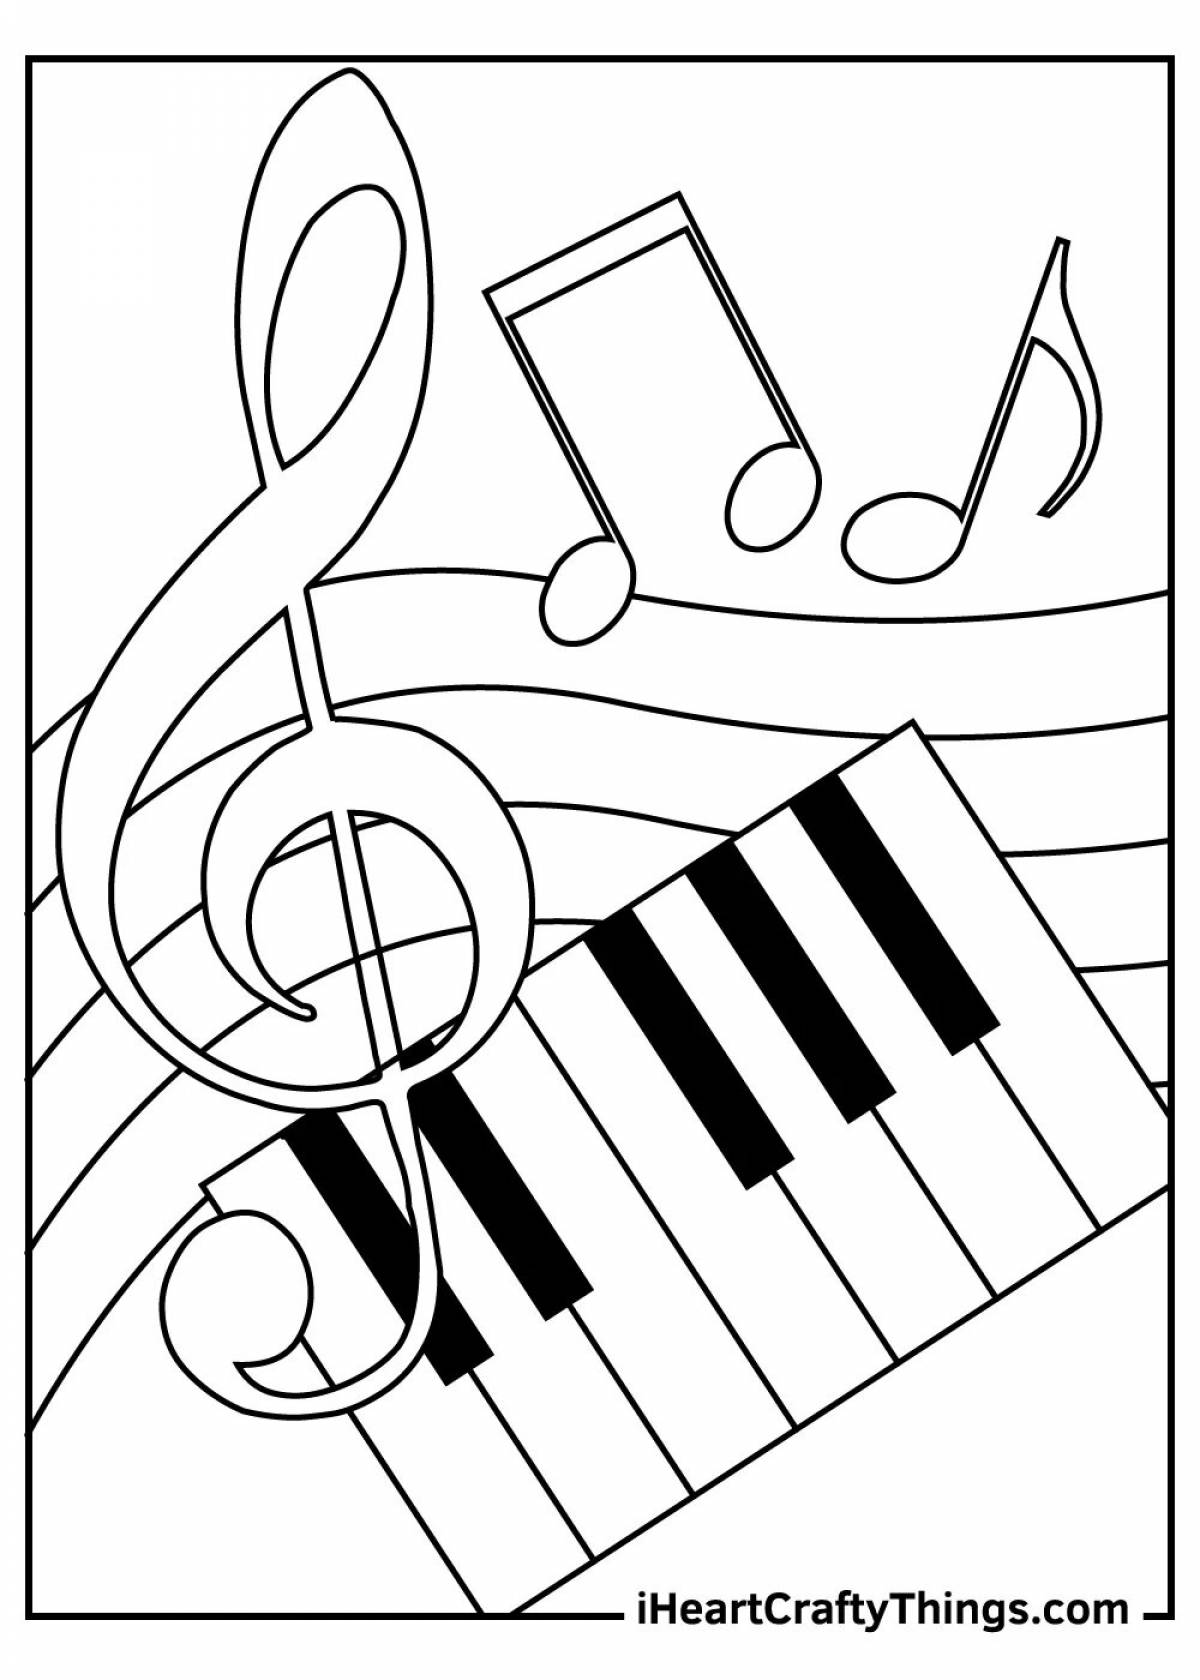 Музыкальные для детей на уроках музыки #8